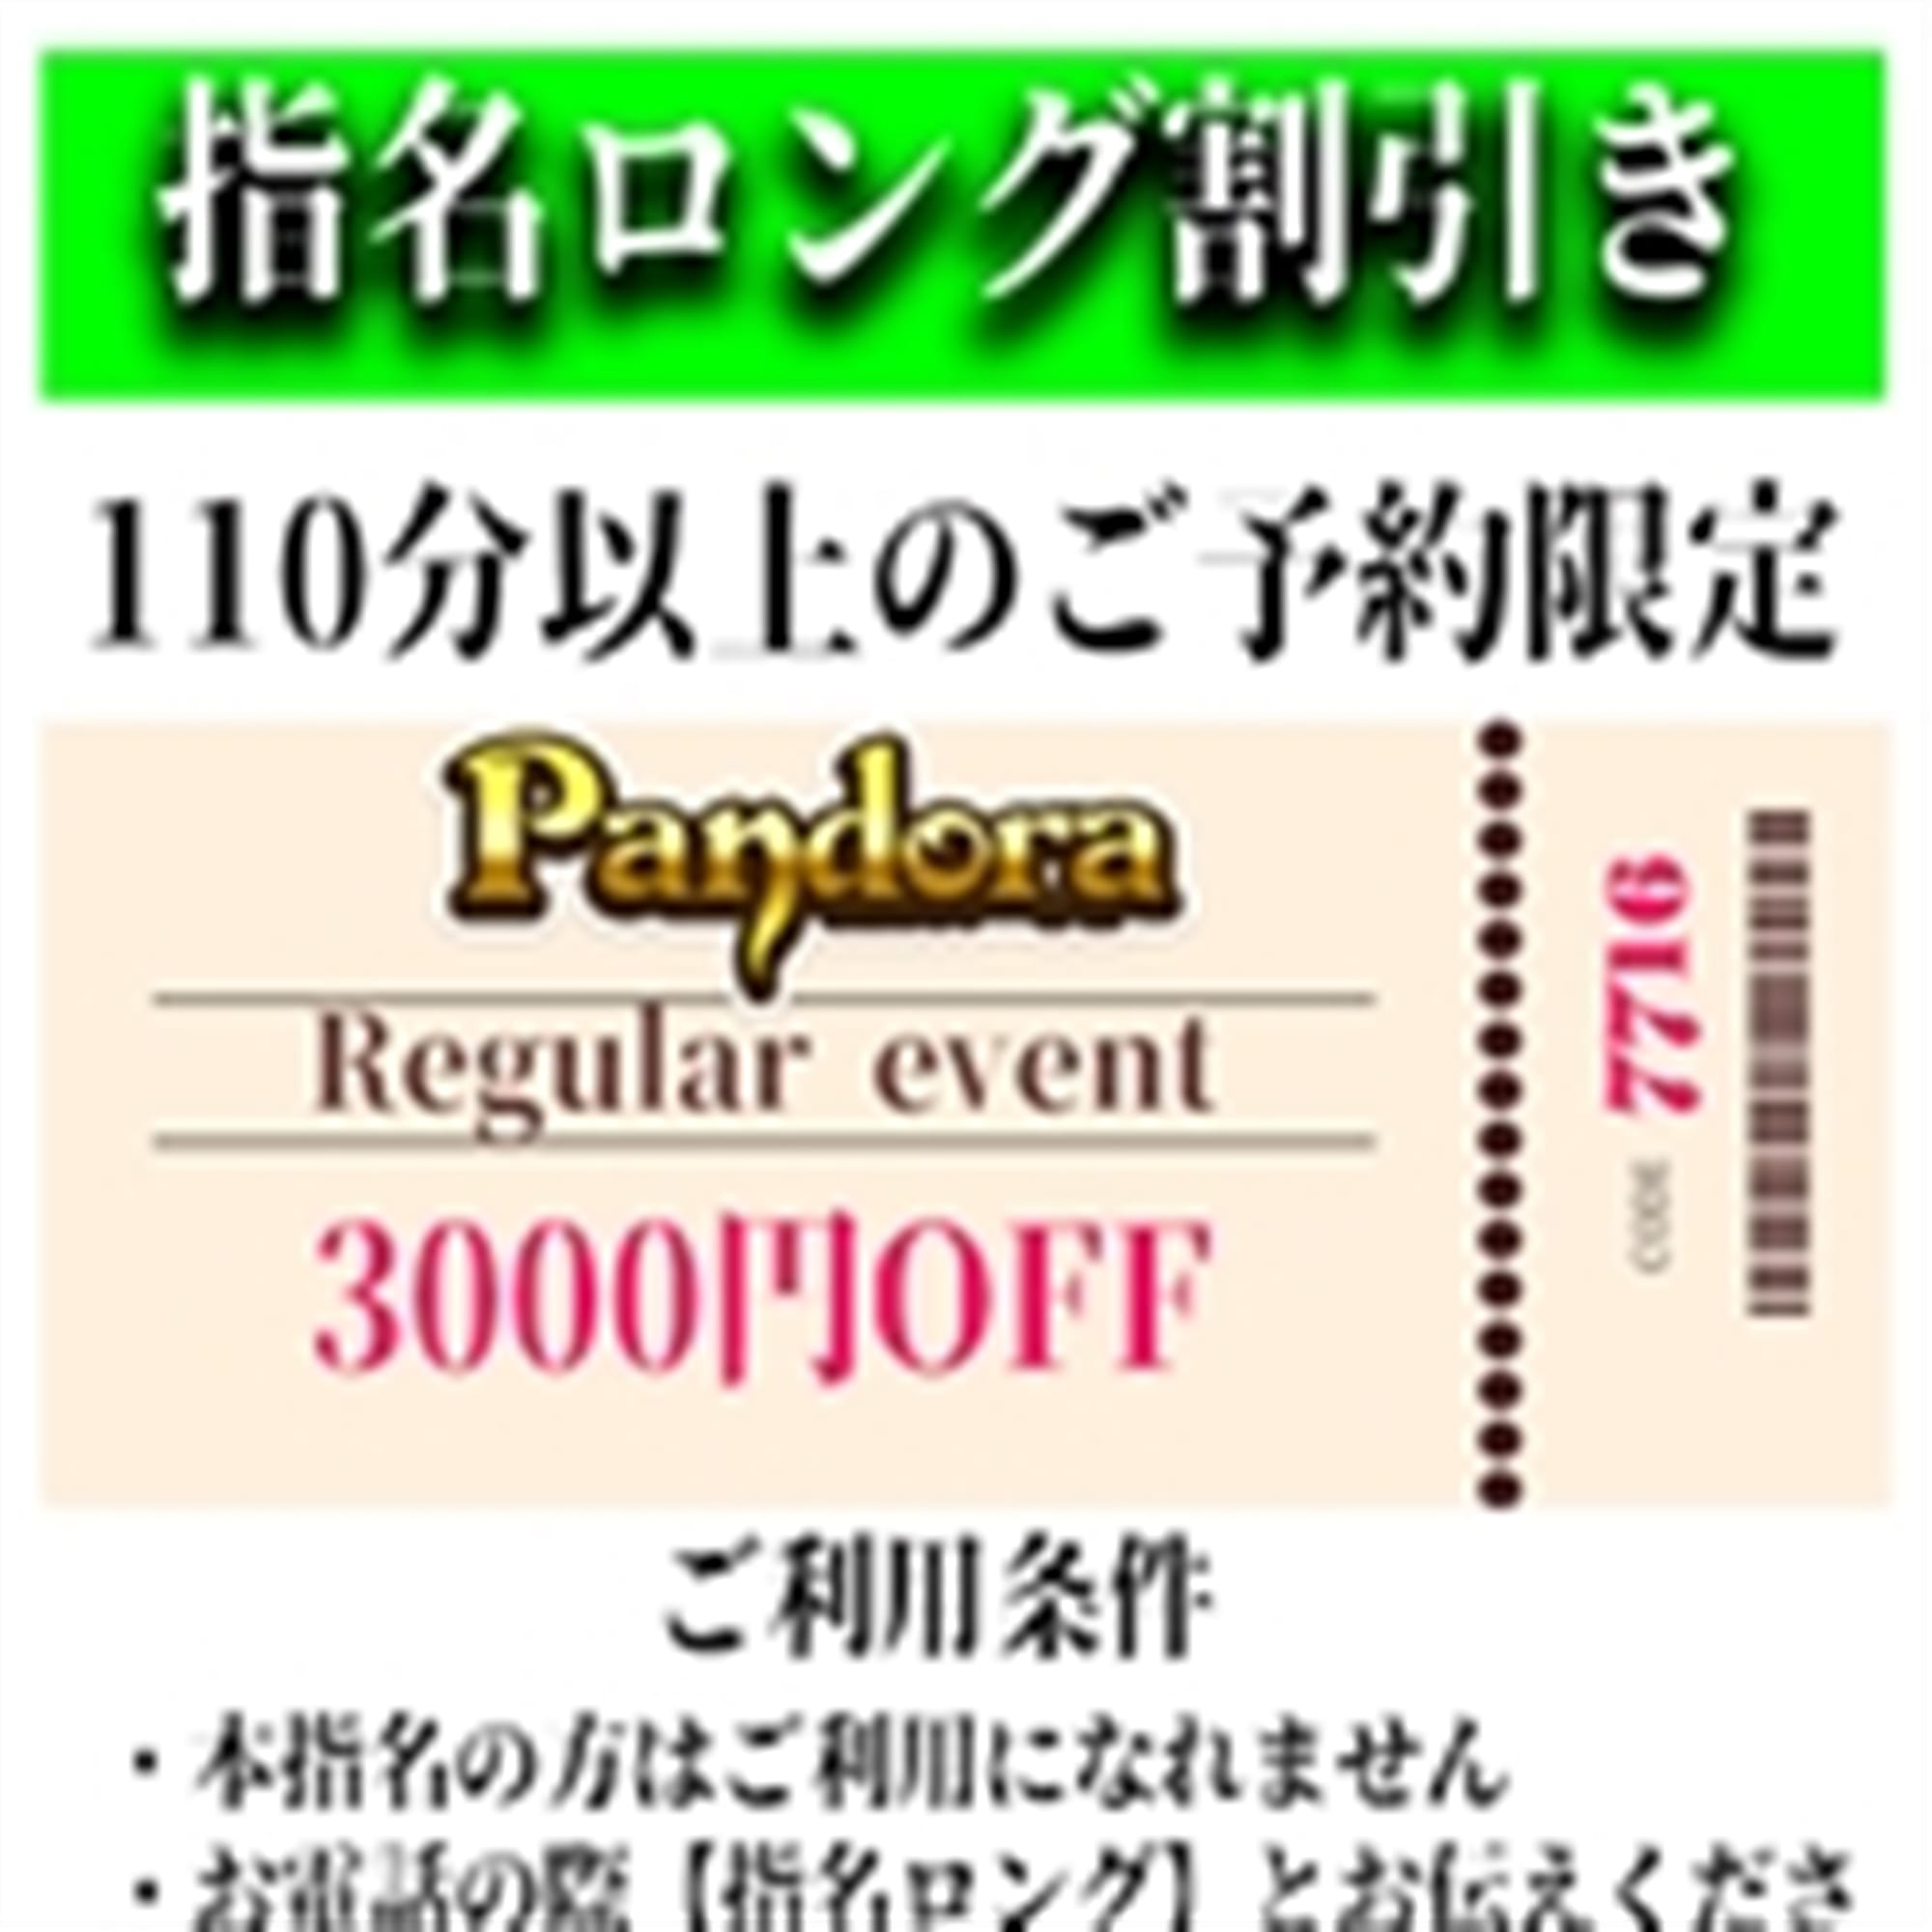 「ご指名のお客様も遊べるロングコース割引」04/26(金) 13:52 | Pandora(パンドラ)新潟のお得なニュース